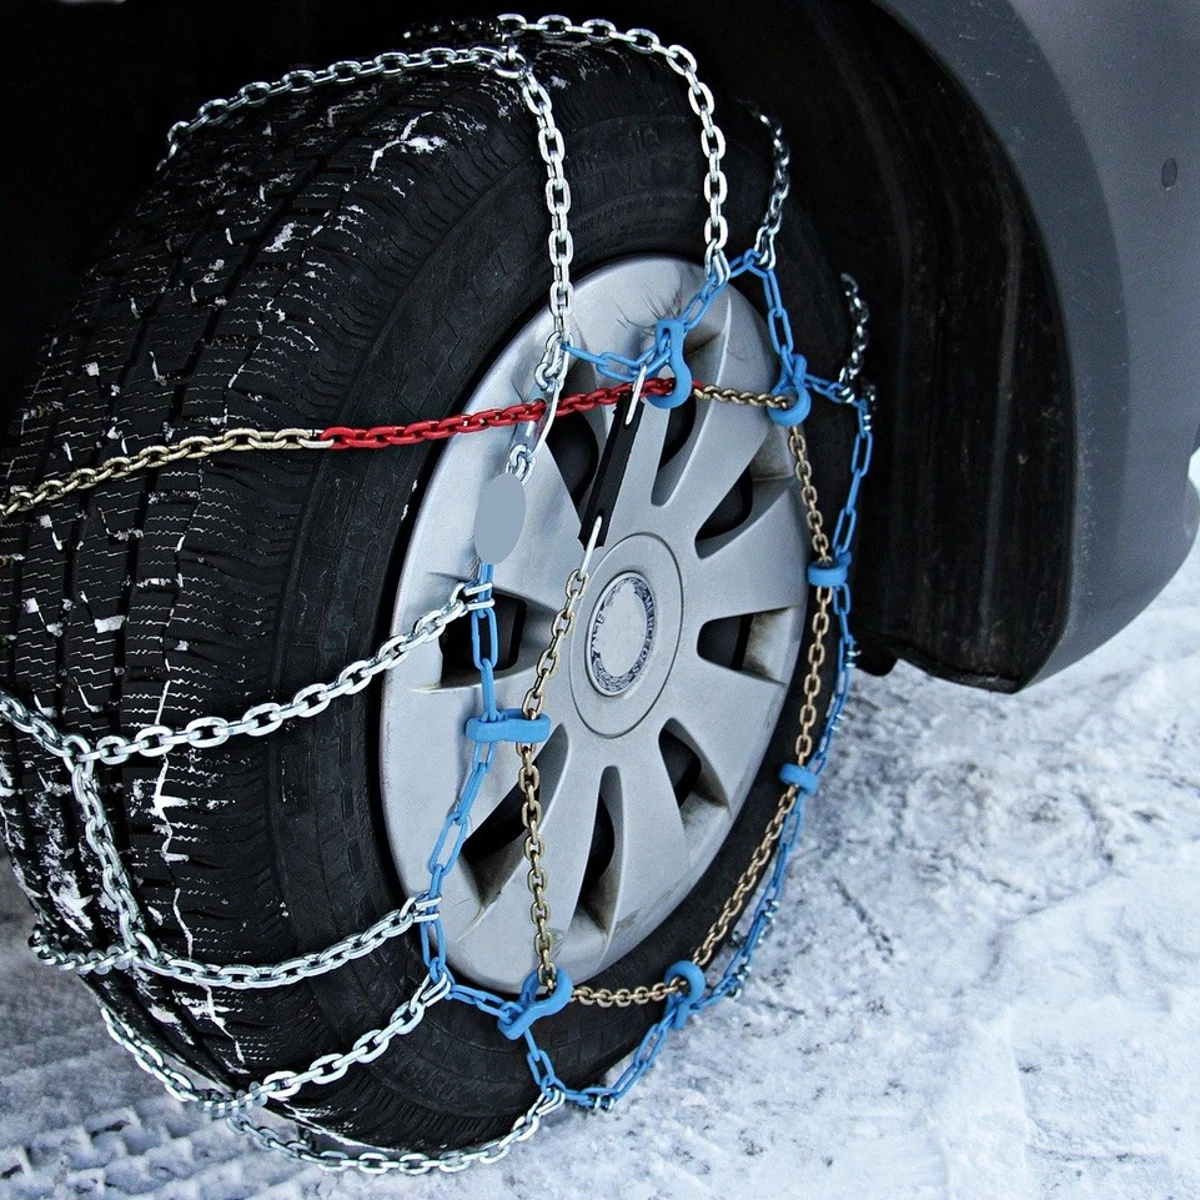 En ruedas tengo instalar las cadenas si mi coche es 4x4? ¿Y si tracción trasera?